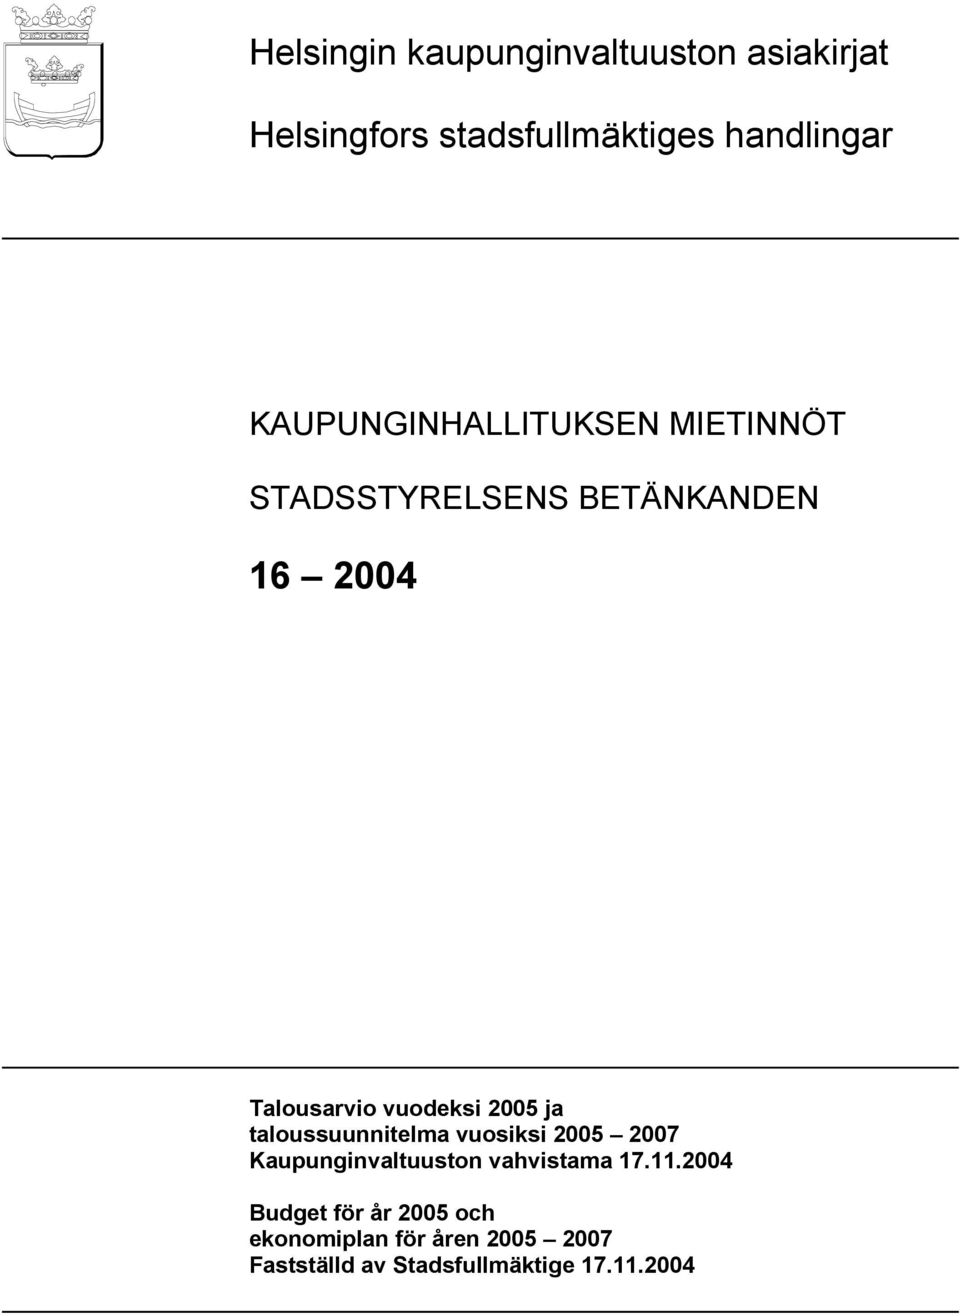 taloussuunnitelma vuosiksi 2005 2007 Kaupunginvaltuuston vahvistama 17.11.